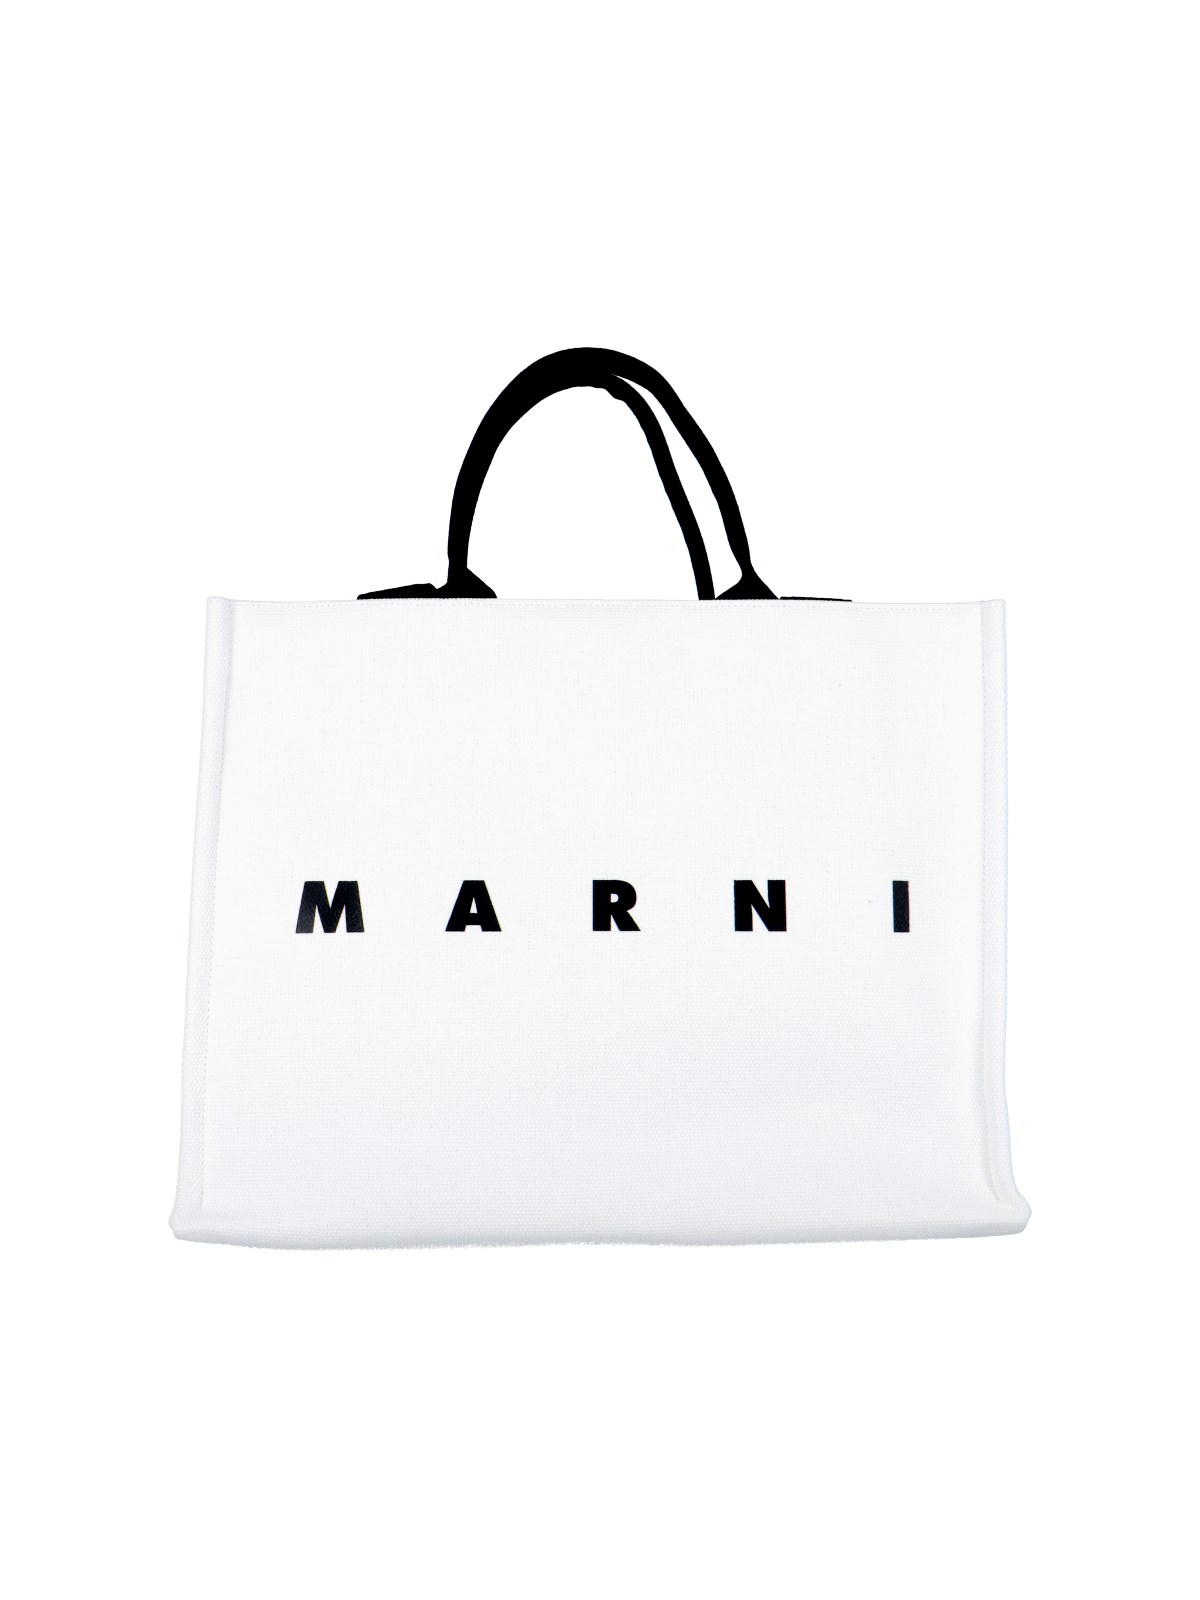 Marni Logo Tote Bag In White